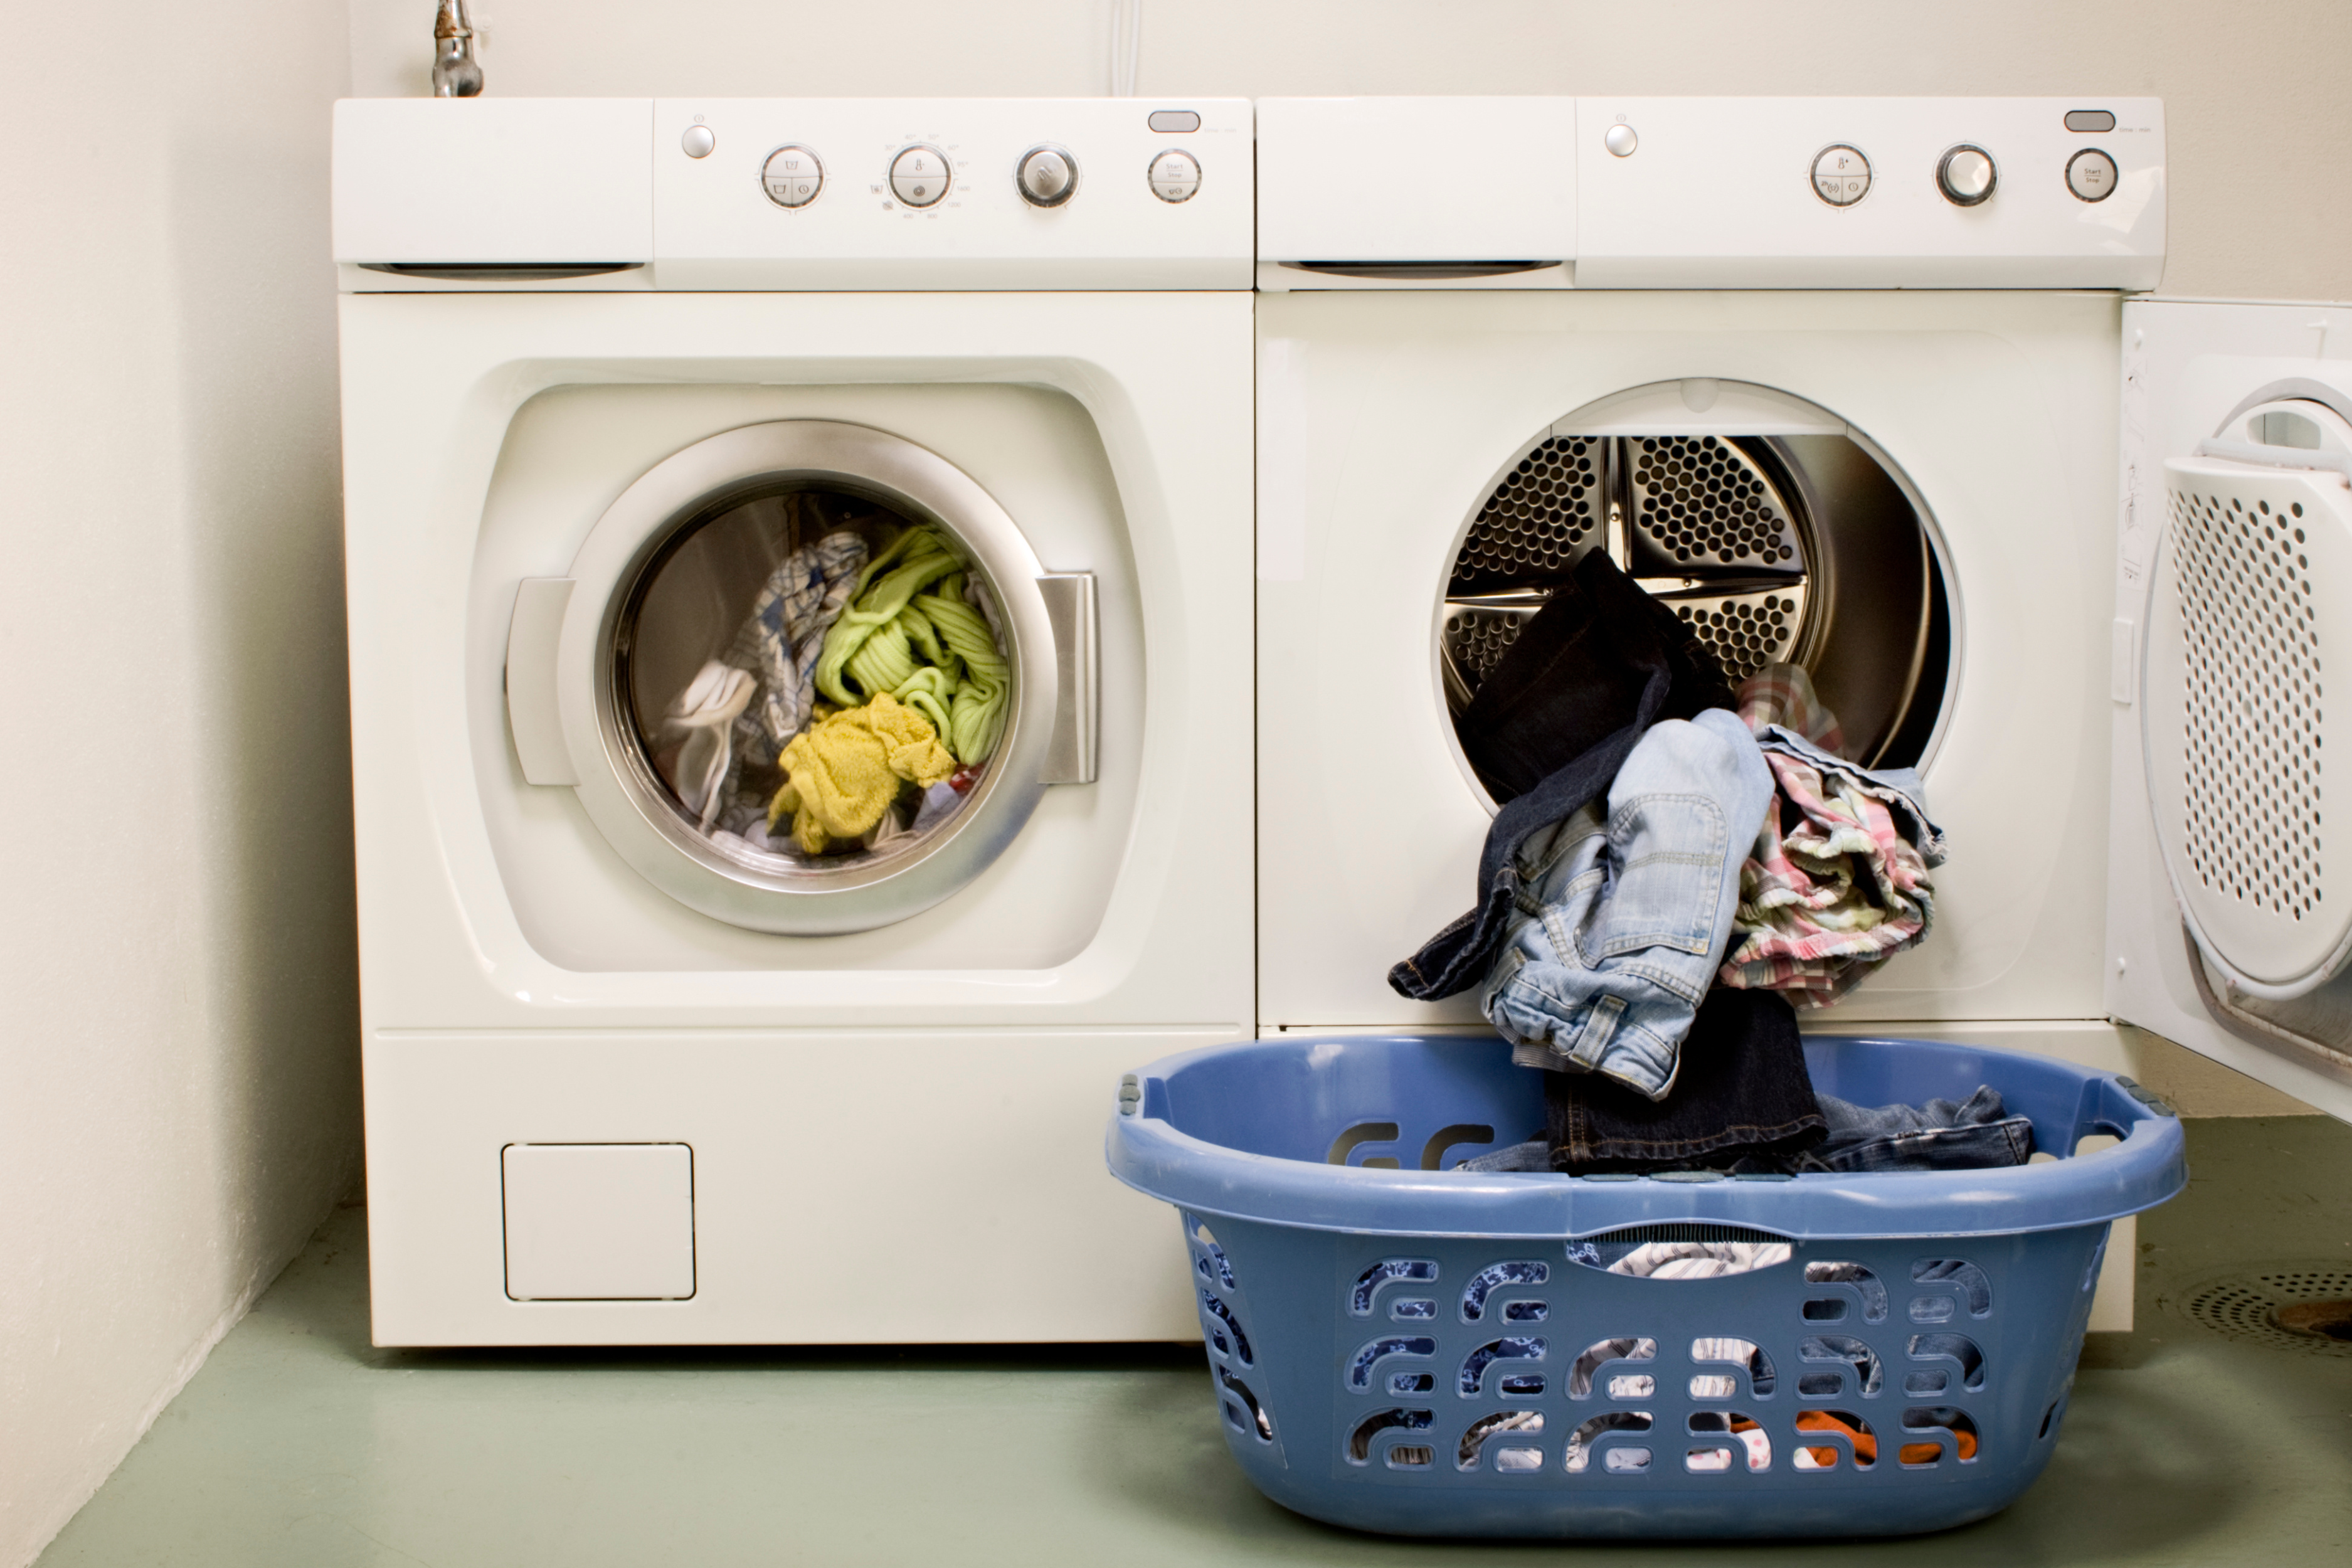 Secadora abierta con una cesta de ropa limpia al lado, representando el cuidado y mantenimiento necesario para evitar malos olores